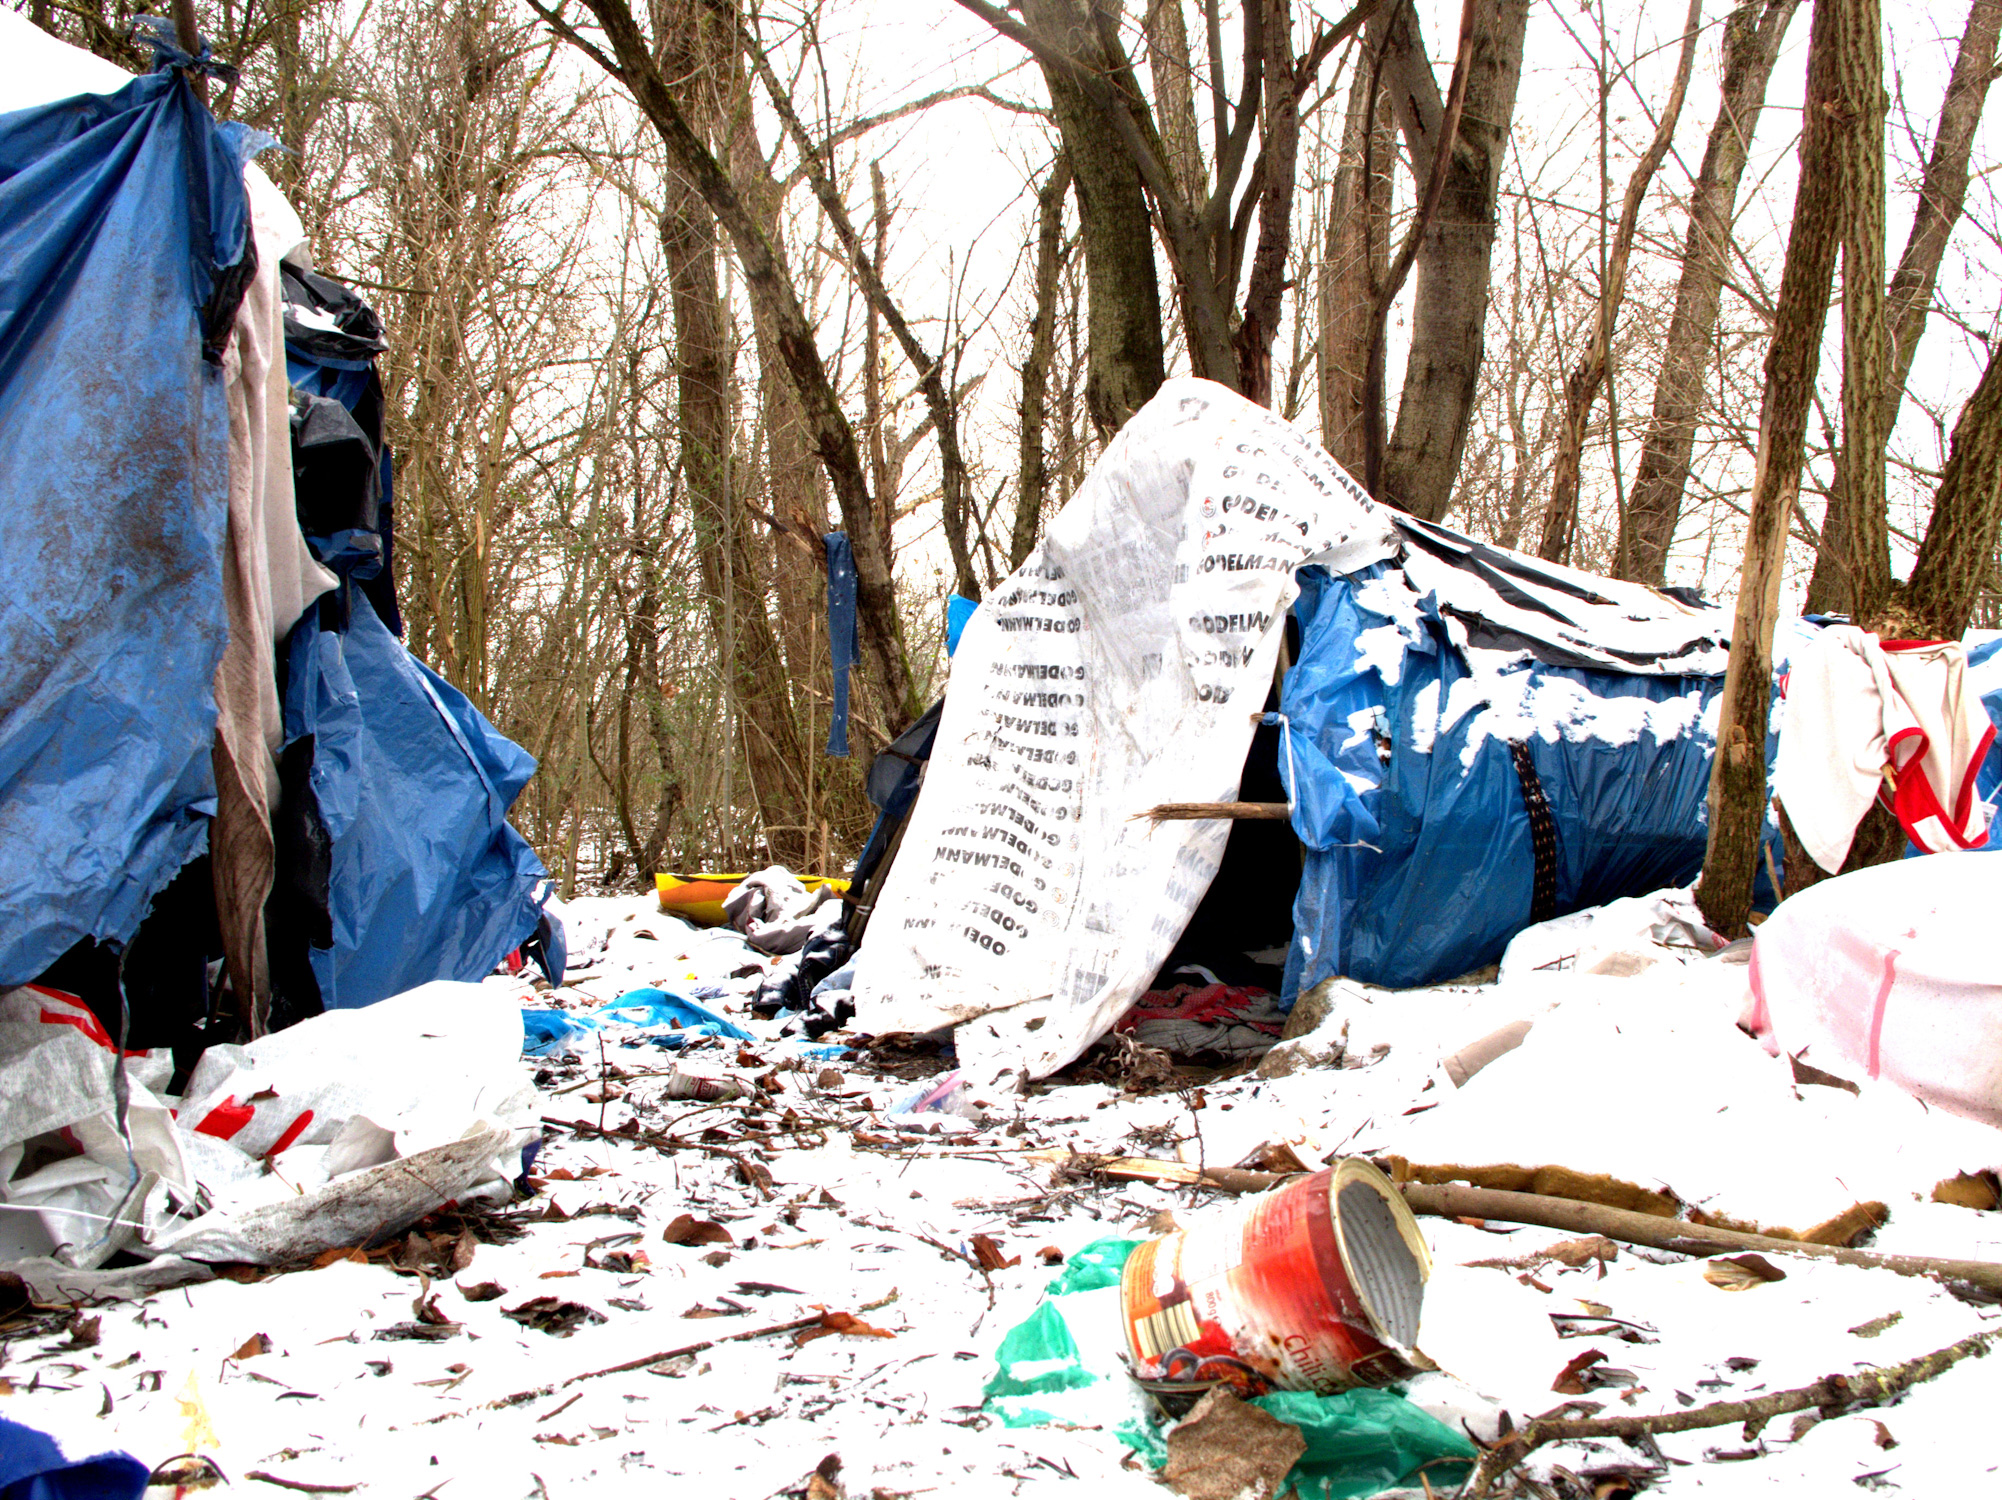 verlassene Zelte und Müll im Schnee